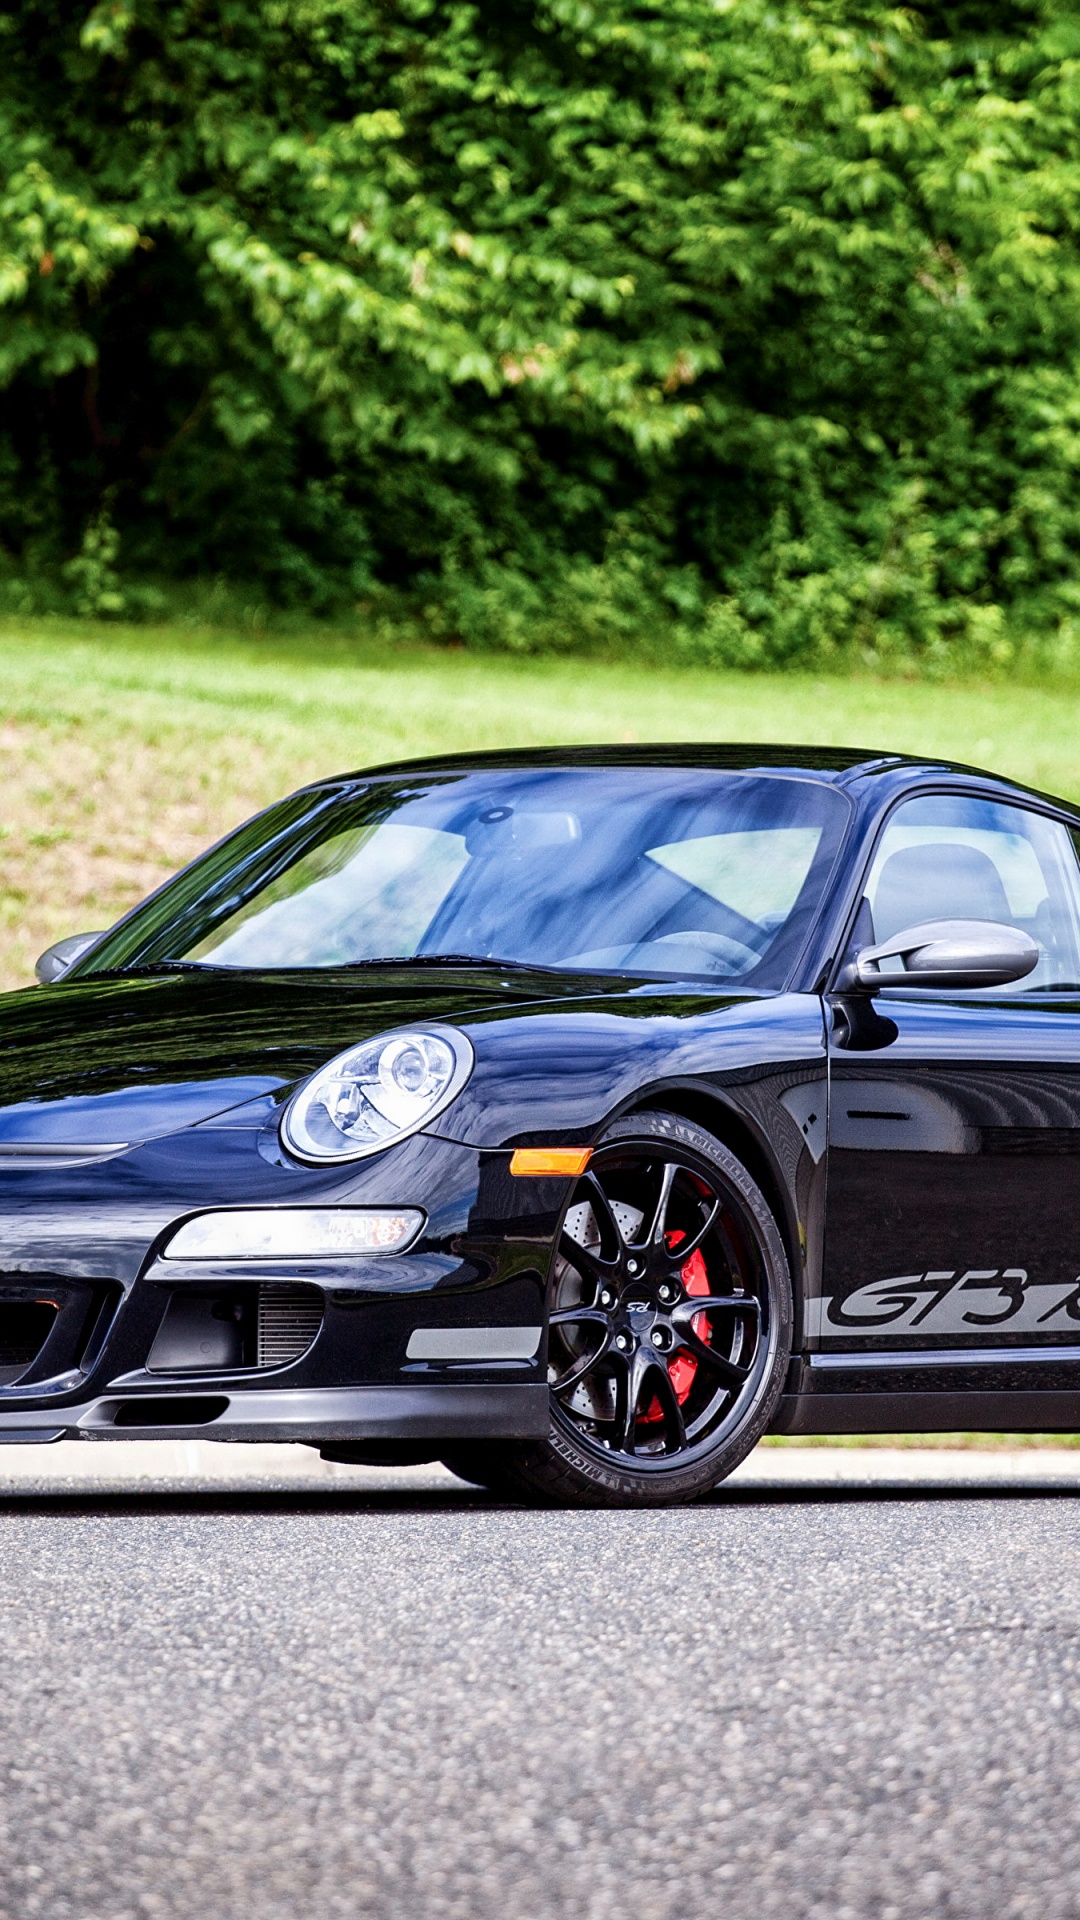 Porsche 911 Negro en la Carretera Durante el Día. Wallpaper in 1080x1920 Resolution